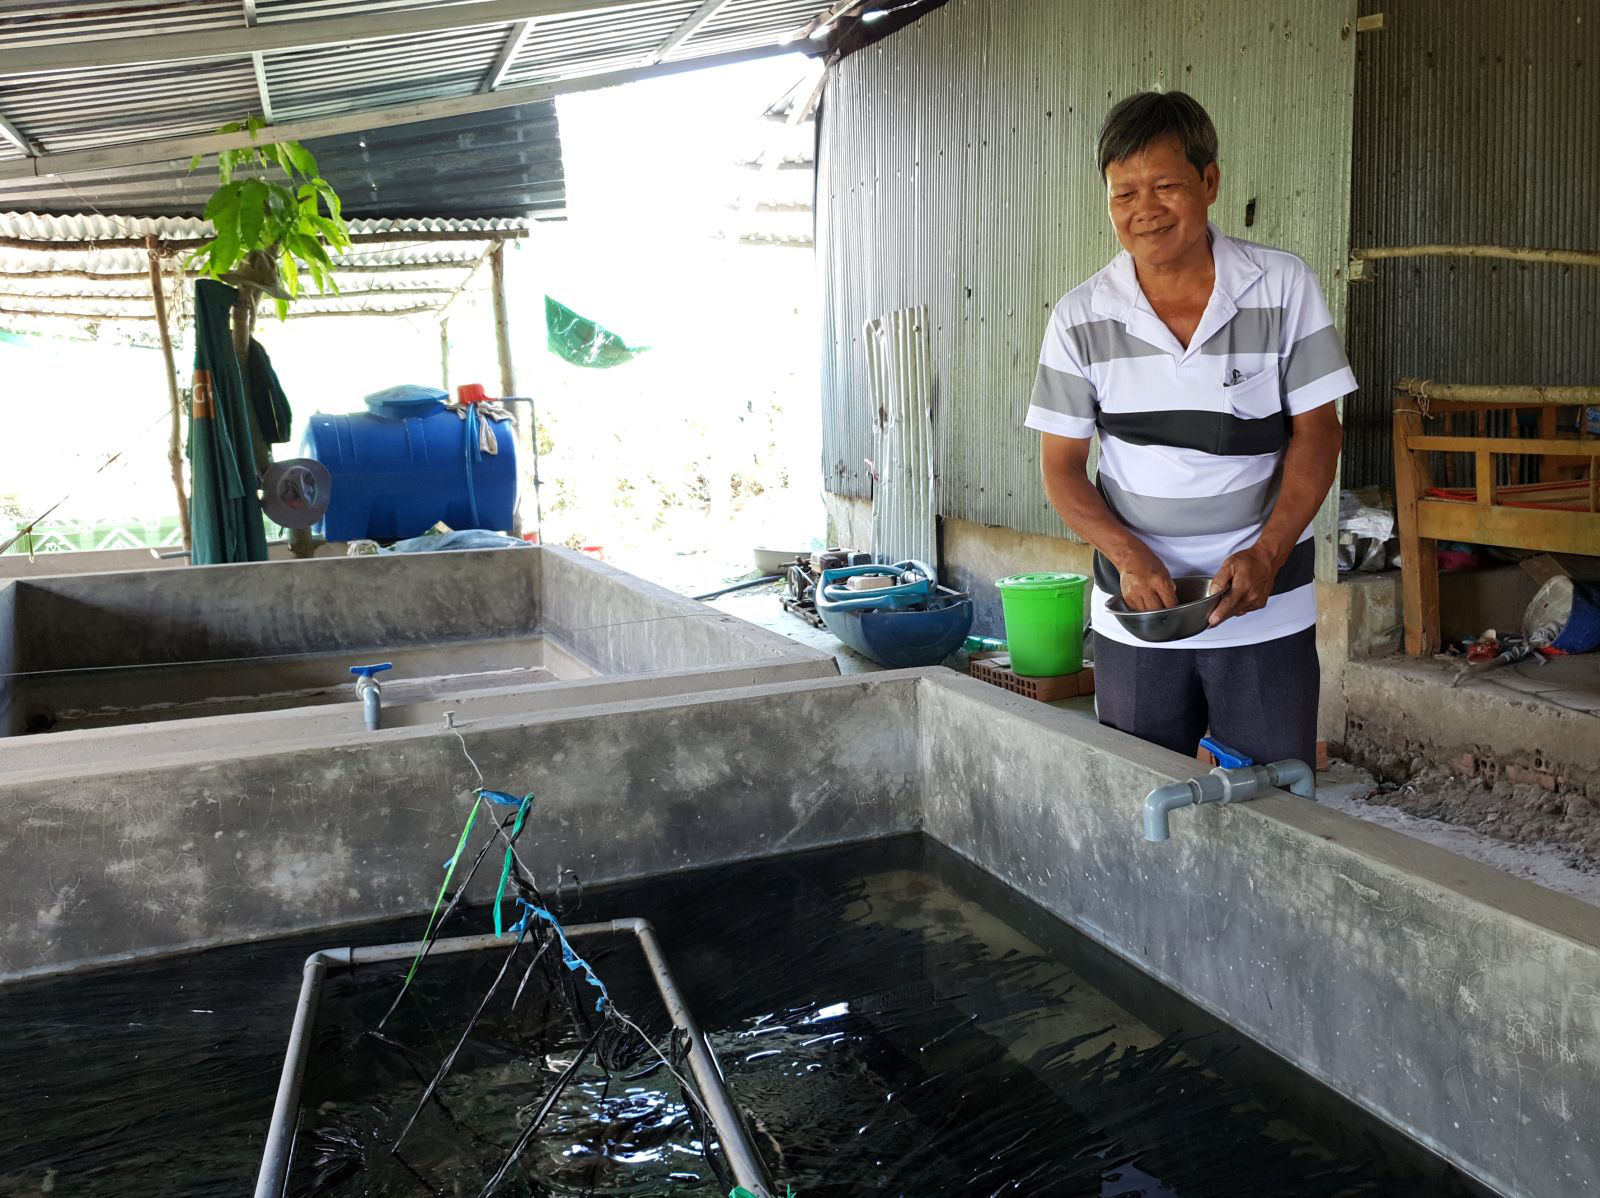 Một ông nông dân Cần Thơ nuôi lươn giống không bùn trong bể xi măng để bán giống, nhiều người tìm đến xem - Ảnh 1.